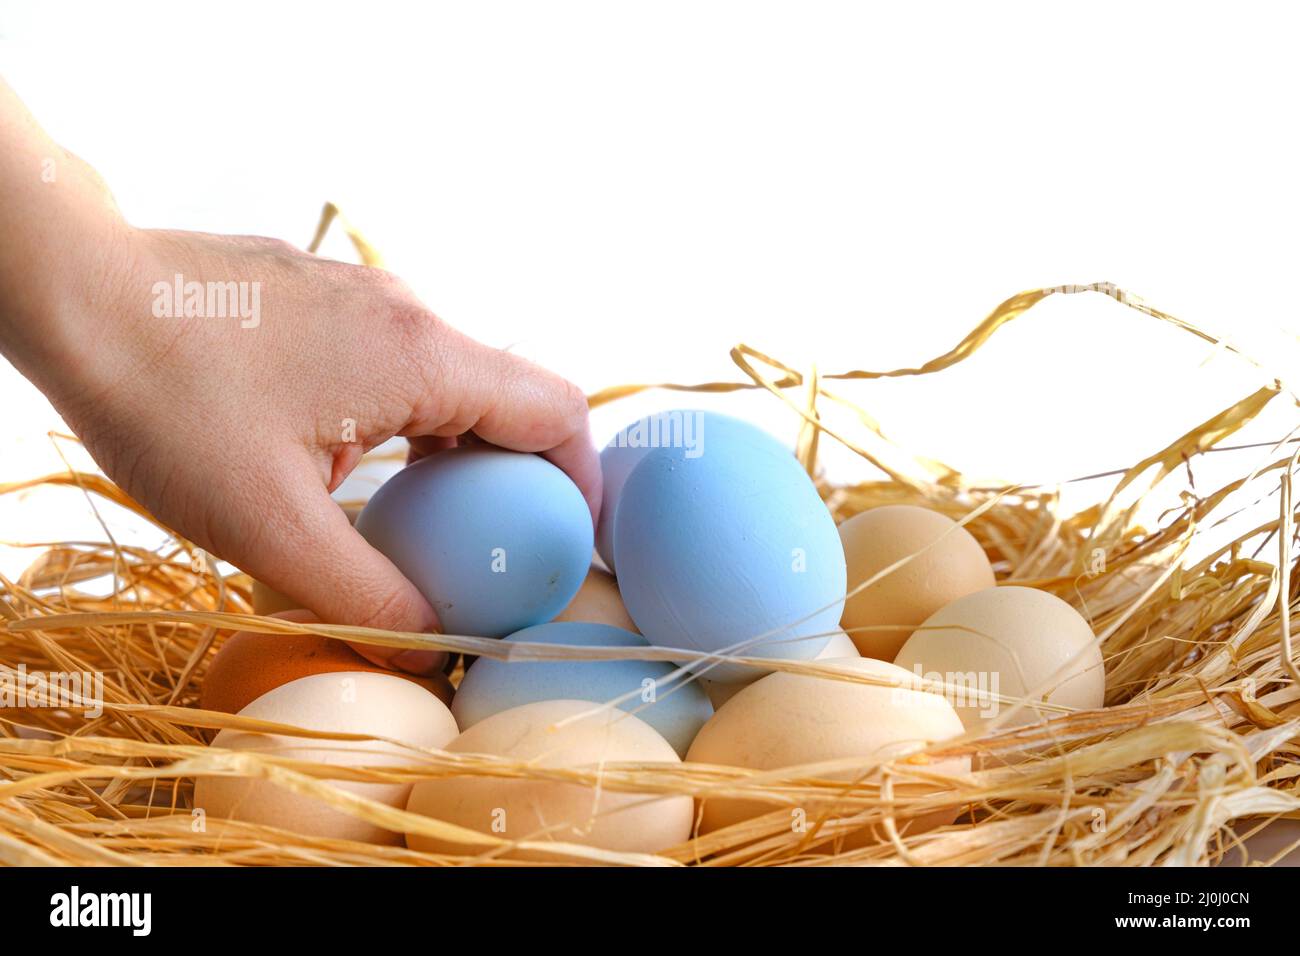 Eine Frau nimmt einen blauen Eierstapel in einem Strohnest mit weißem Hintergrund auf. Seitenprofil, Nahaufnahme und Makroaufnahme verschiedener hartschalter Eier. Stockfoto